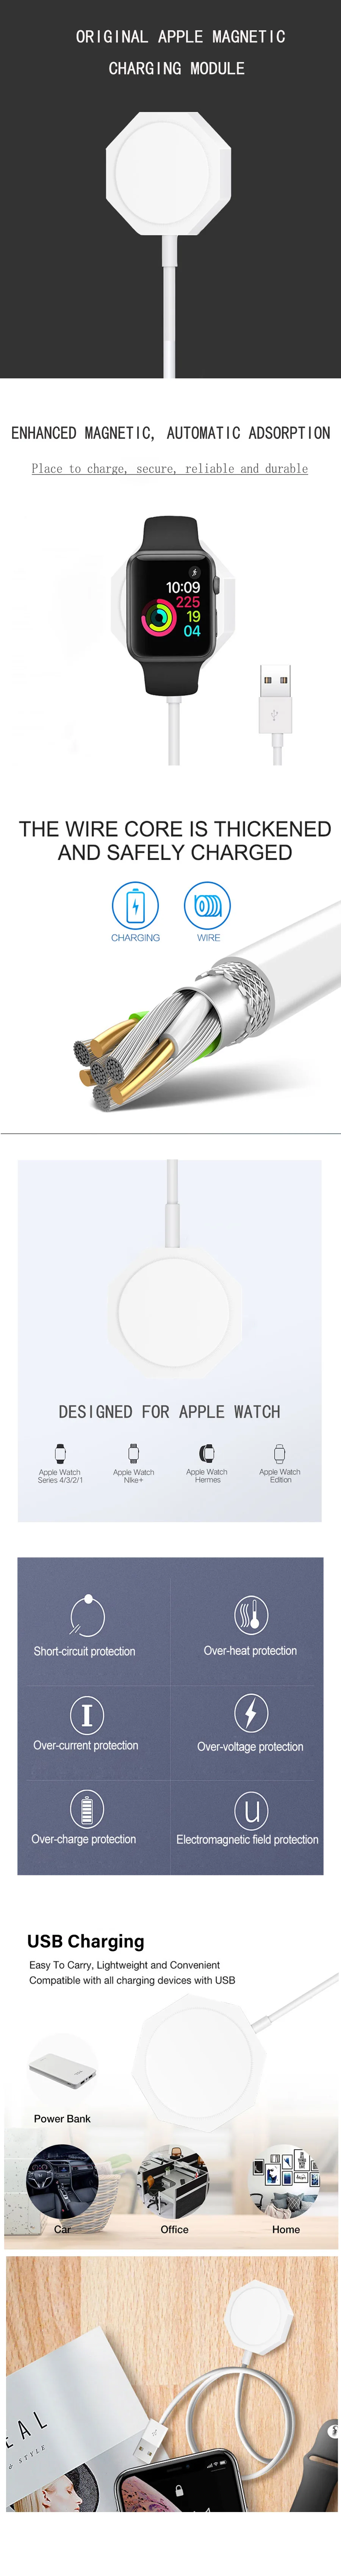 BSYDZKJGS быстро Беспроводной Зарядное устройство для Apple Watch с магнитным креплением Зарядное устройство для наручных часов iwatch, на возраст 1, 2, 3, 4, быстрая зарядка с 1 м USB кабель